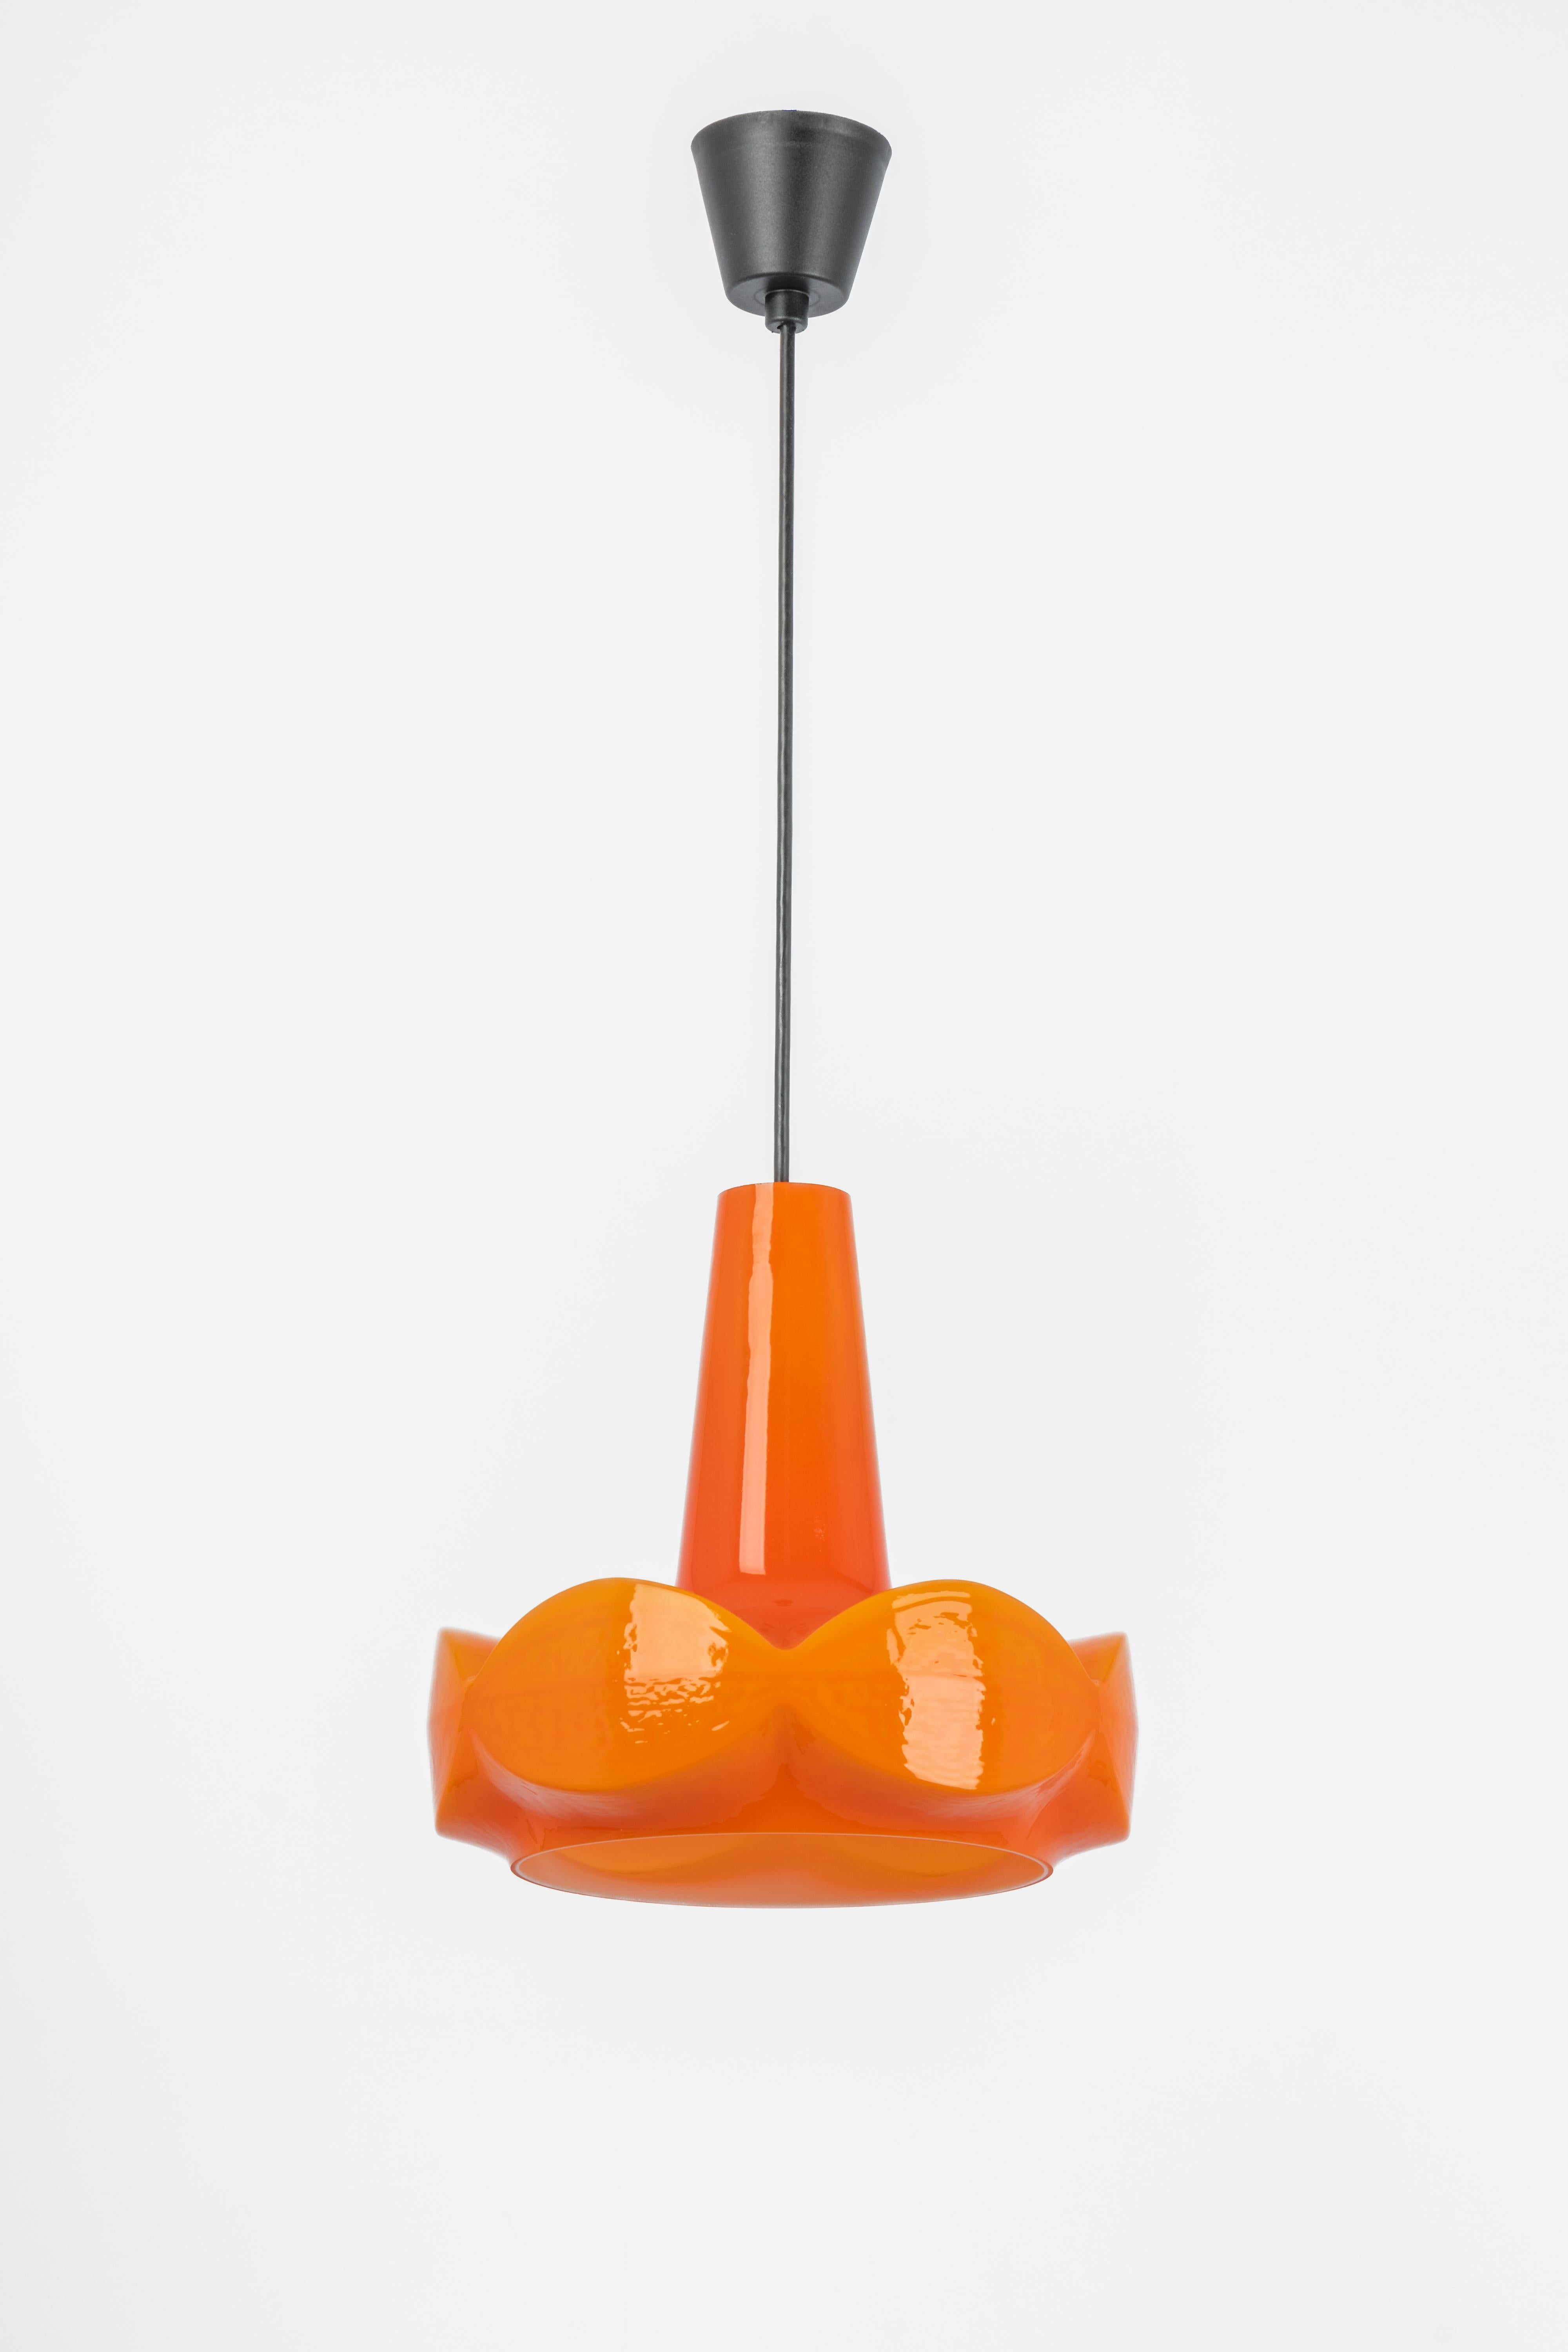 Petite lampe pendante en verre orange de Peill & Putzler, fabriquée en Allemagne, vers les années 1970.

De haute qualité et en très bon état. Nettoyé, bien câblé, et prêt à être utilisé. 
Le luminaire nécessite 1 ampoule E27 standard de 100W